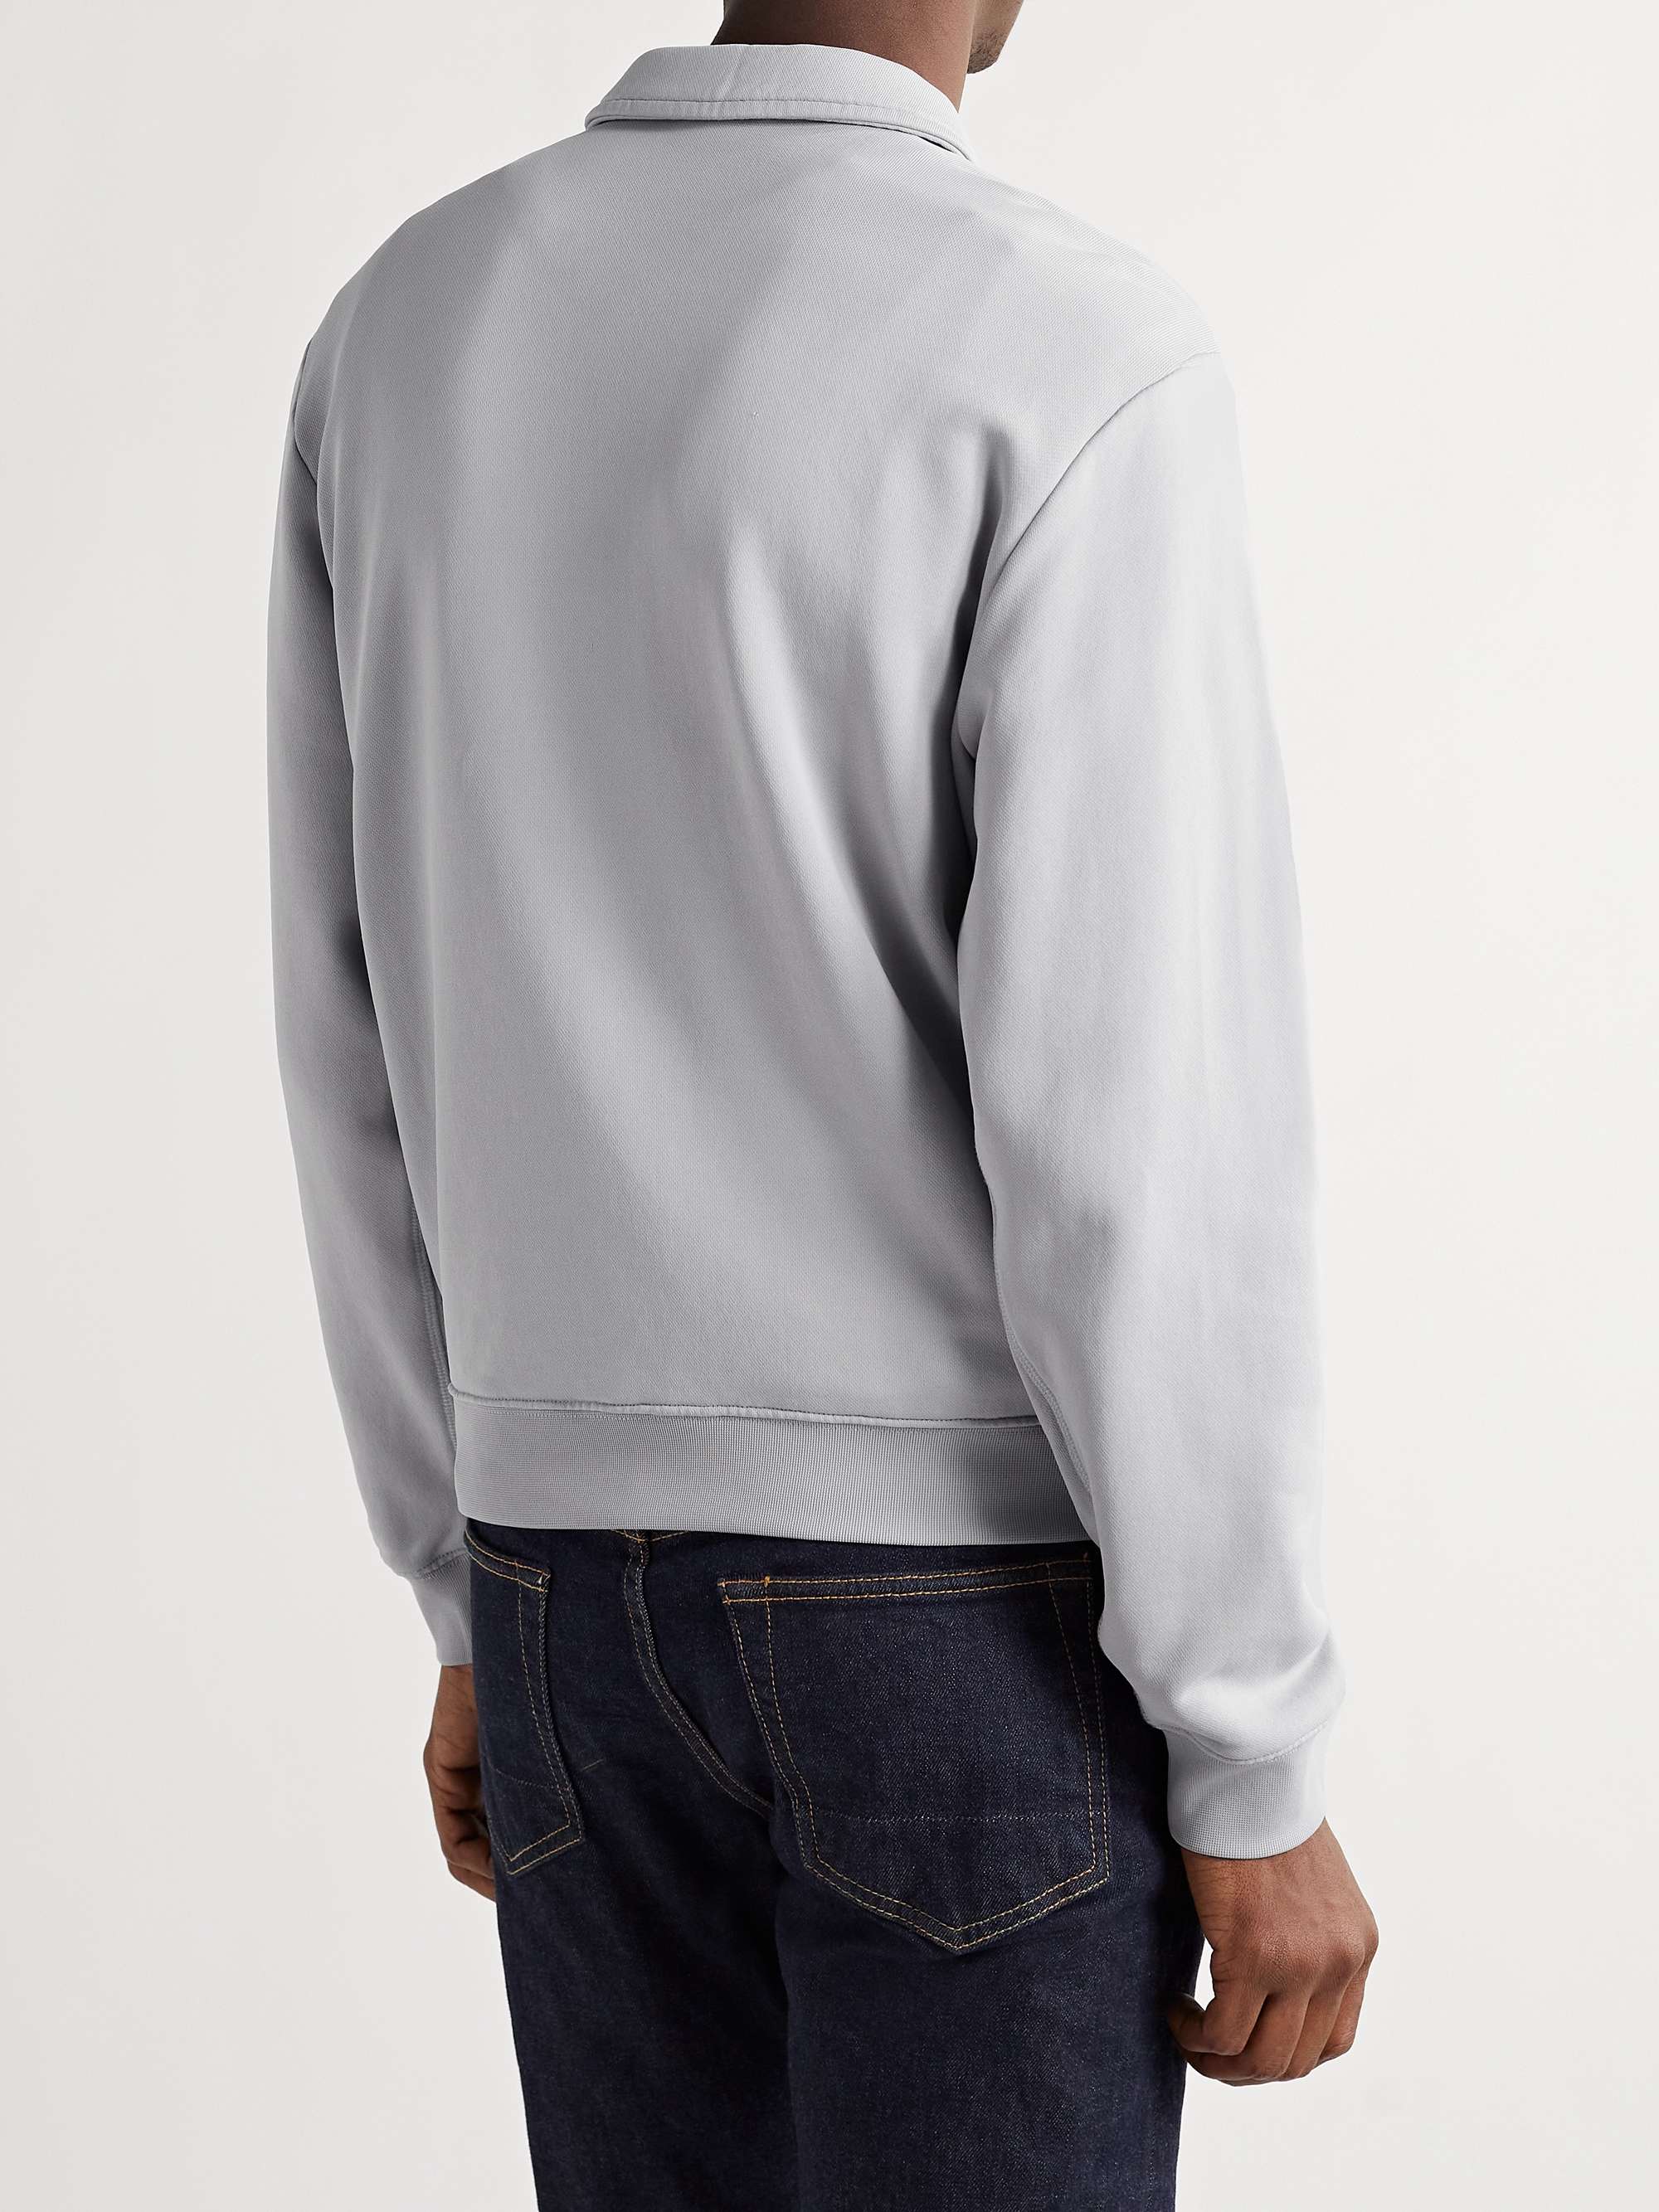 TOM FORD Jersey Half-Zip Sweatshirt